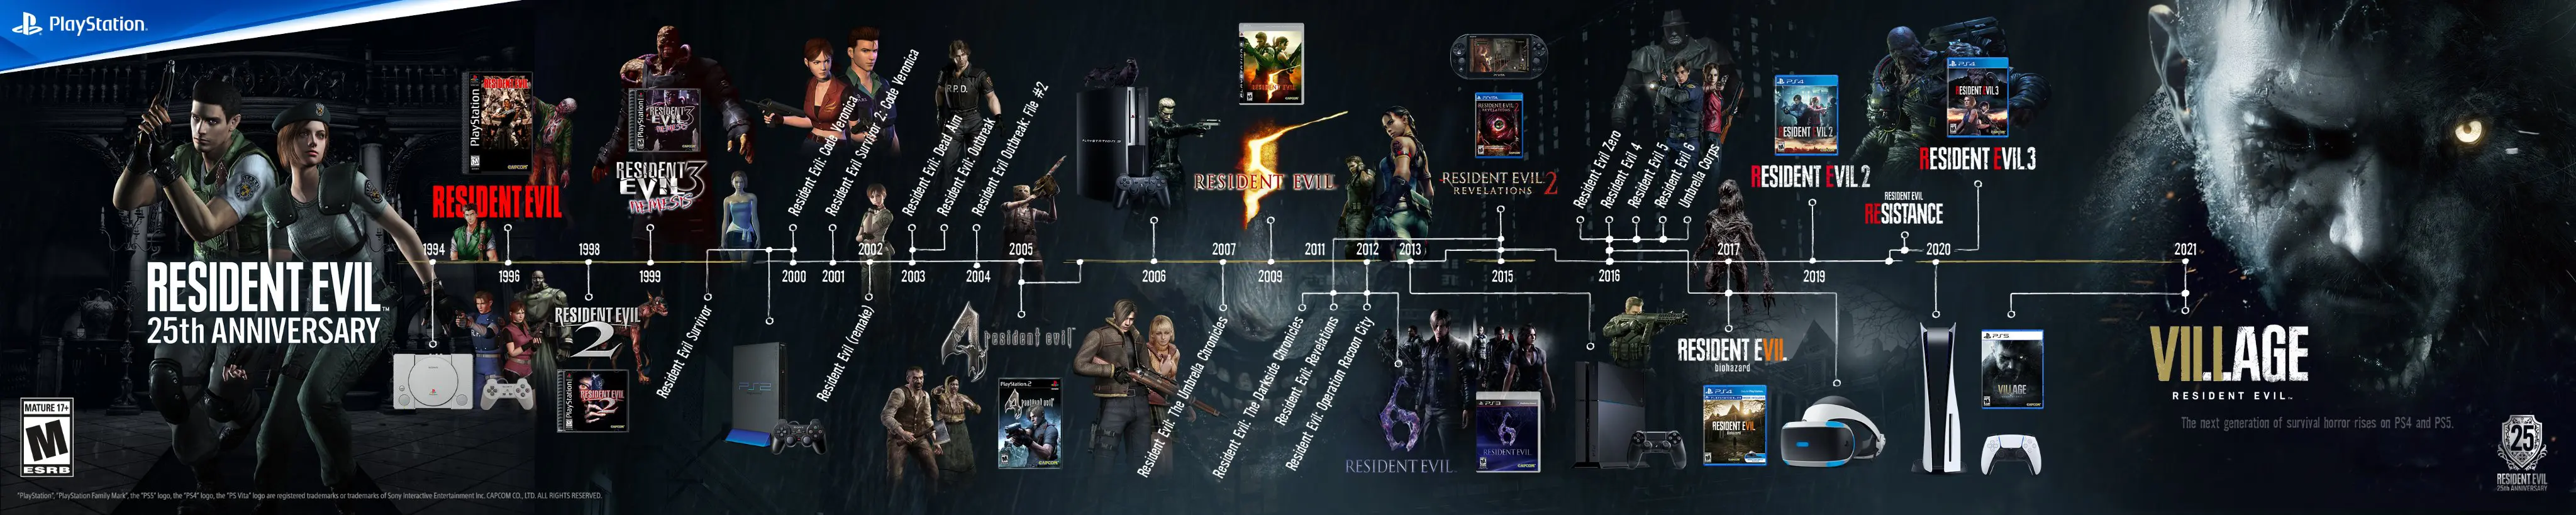 Linha do Tempo da série Resident Evil